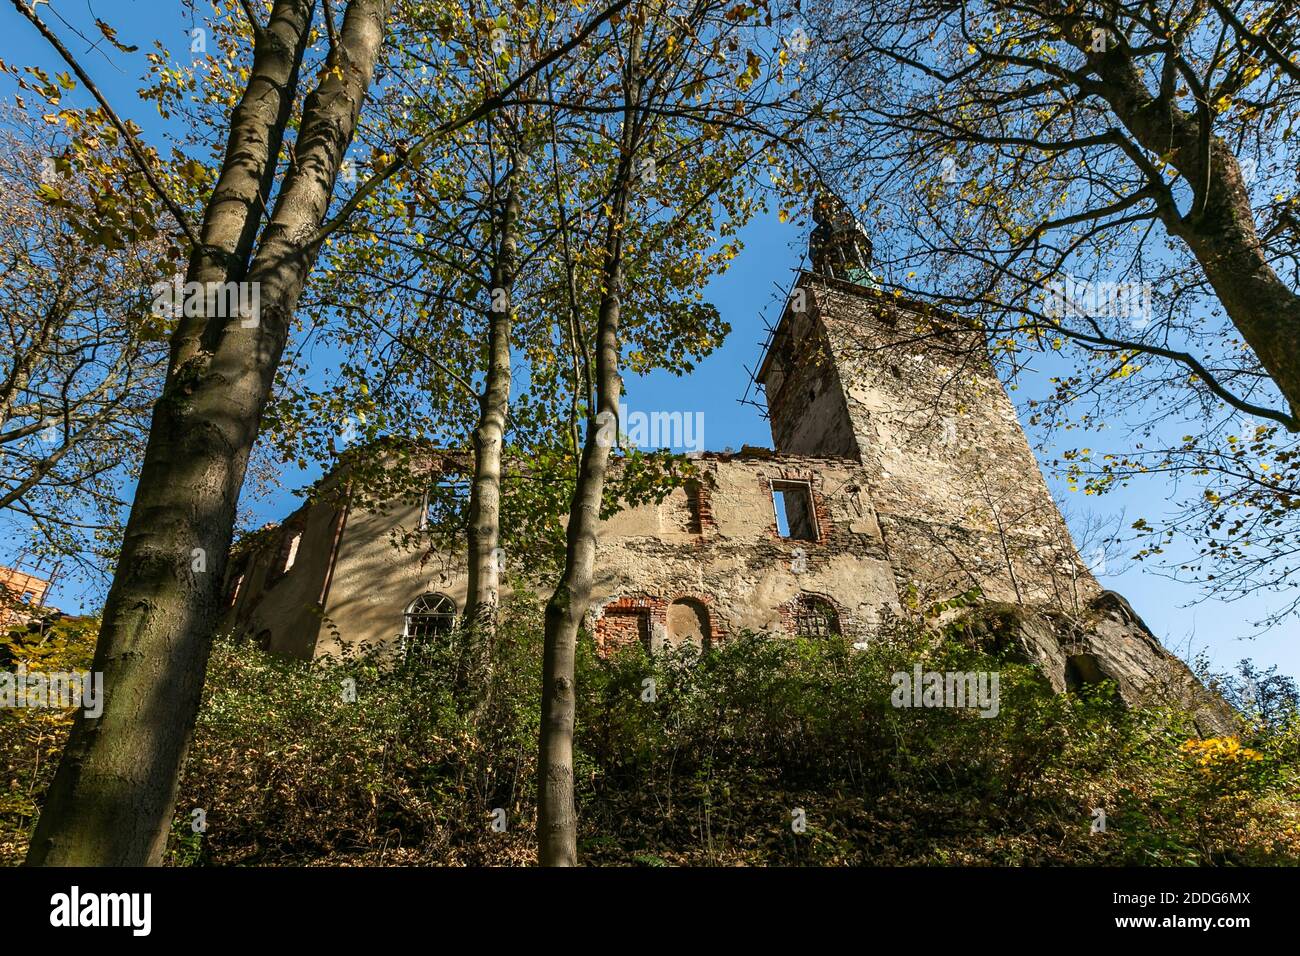 Hartenberg, République tchèque - octobre 14 2018 : vue sur le château gothique en ruines, situé sur une colline rocheuse entourée d'arbres. Jour d'automne ensoleillé. Banque D'Images